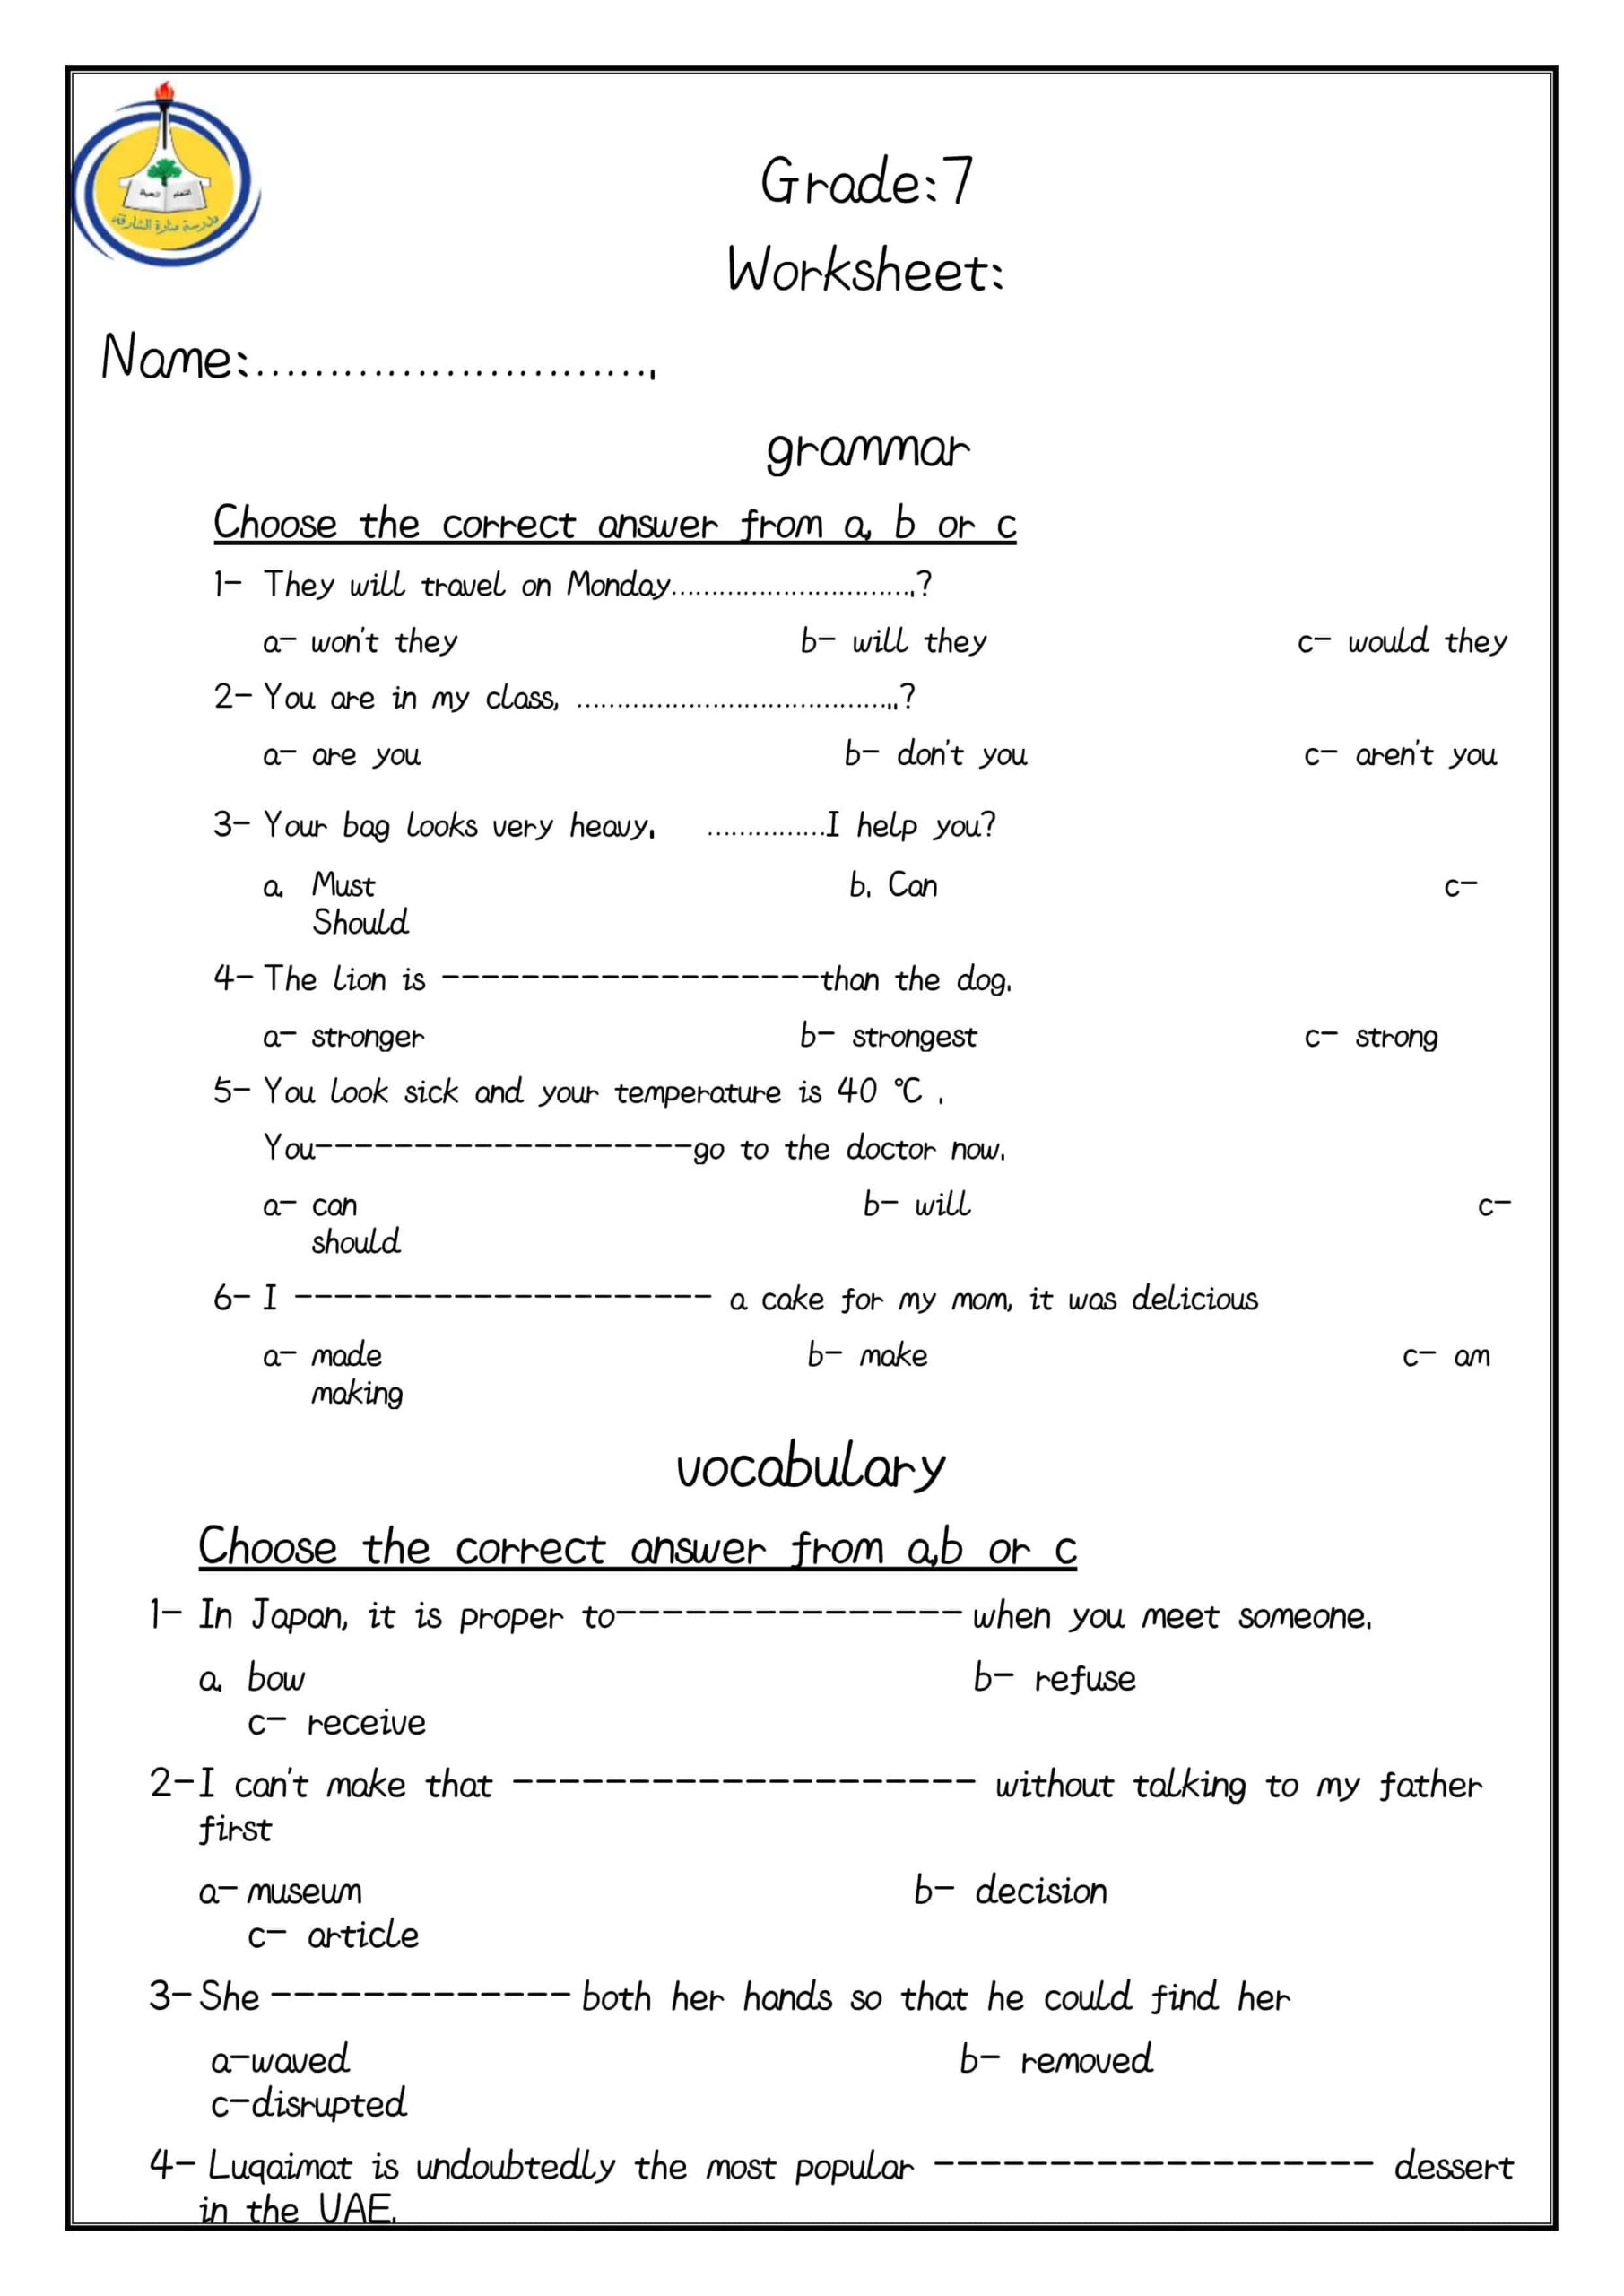 أوراق عمل تدريبات اللغة الإنجليزية الصف السابع 